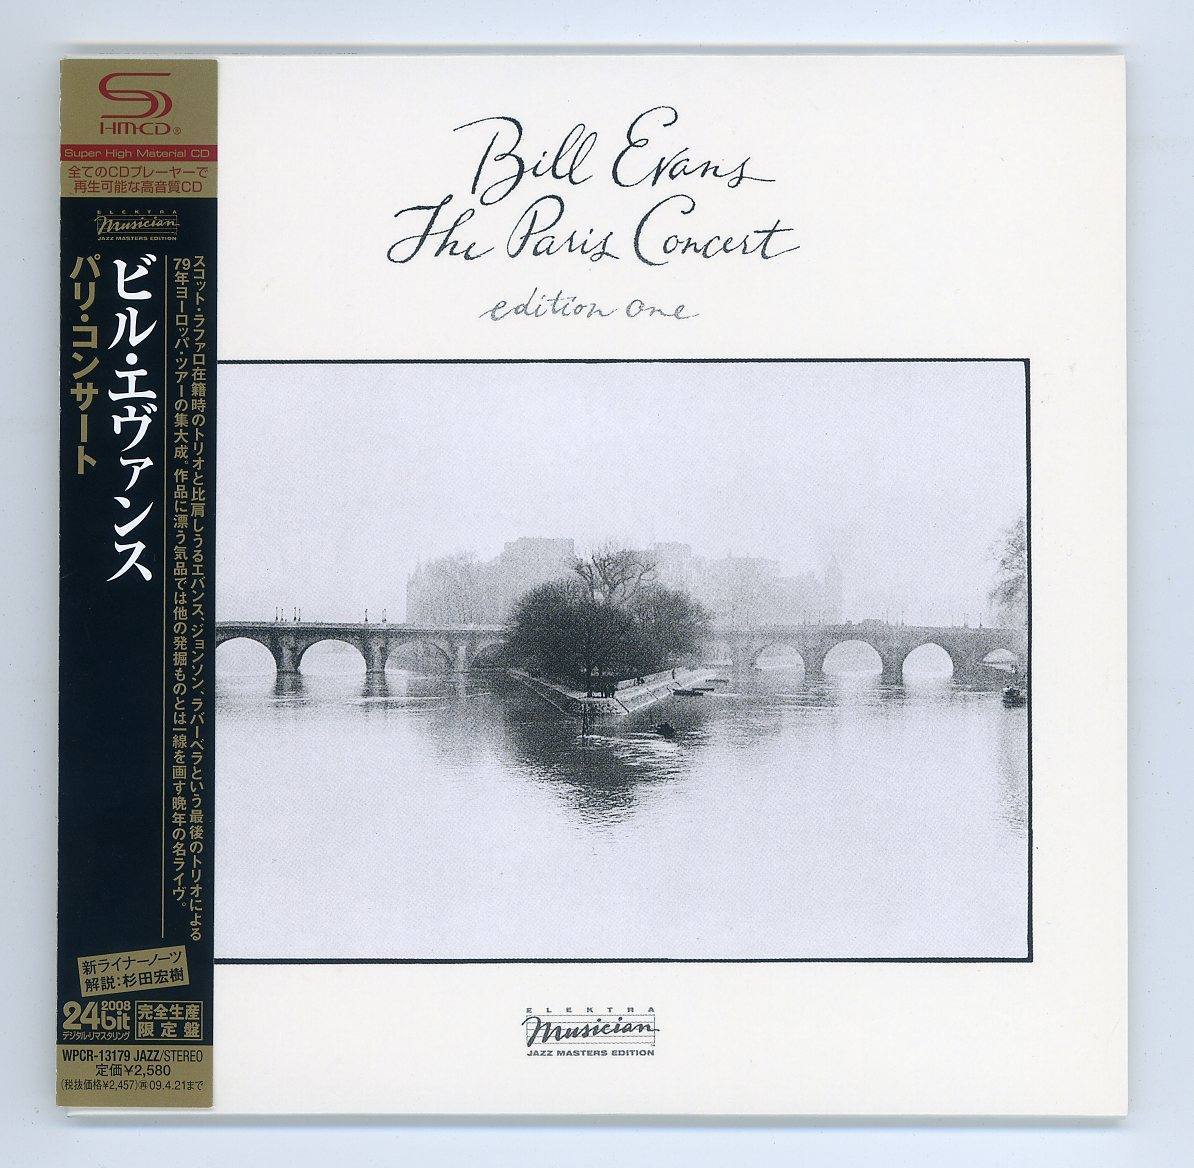 ビル・エヴァンス/パリ・コンサート 1 & 2 SHM-CD/紙ジャケットCD-